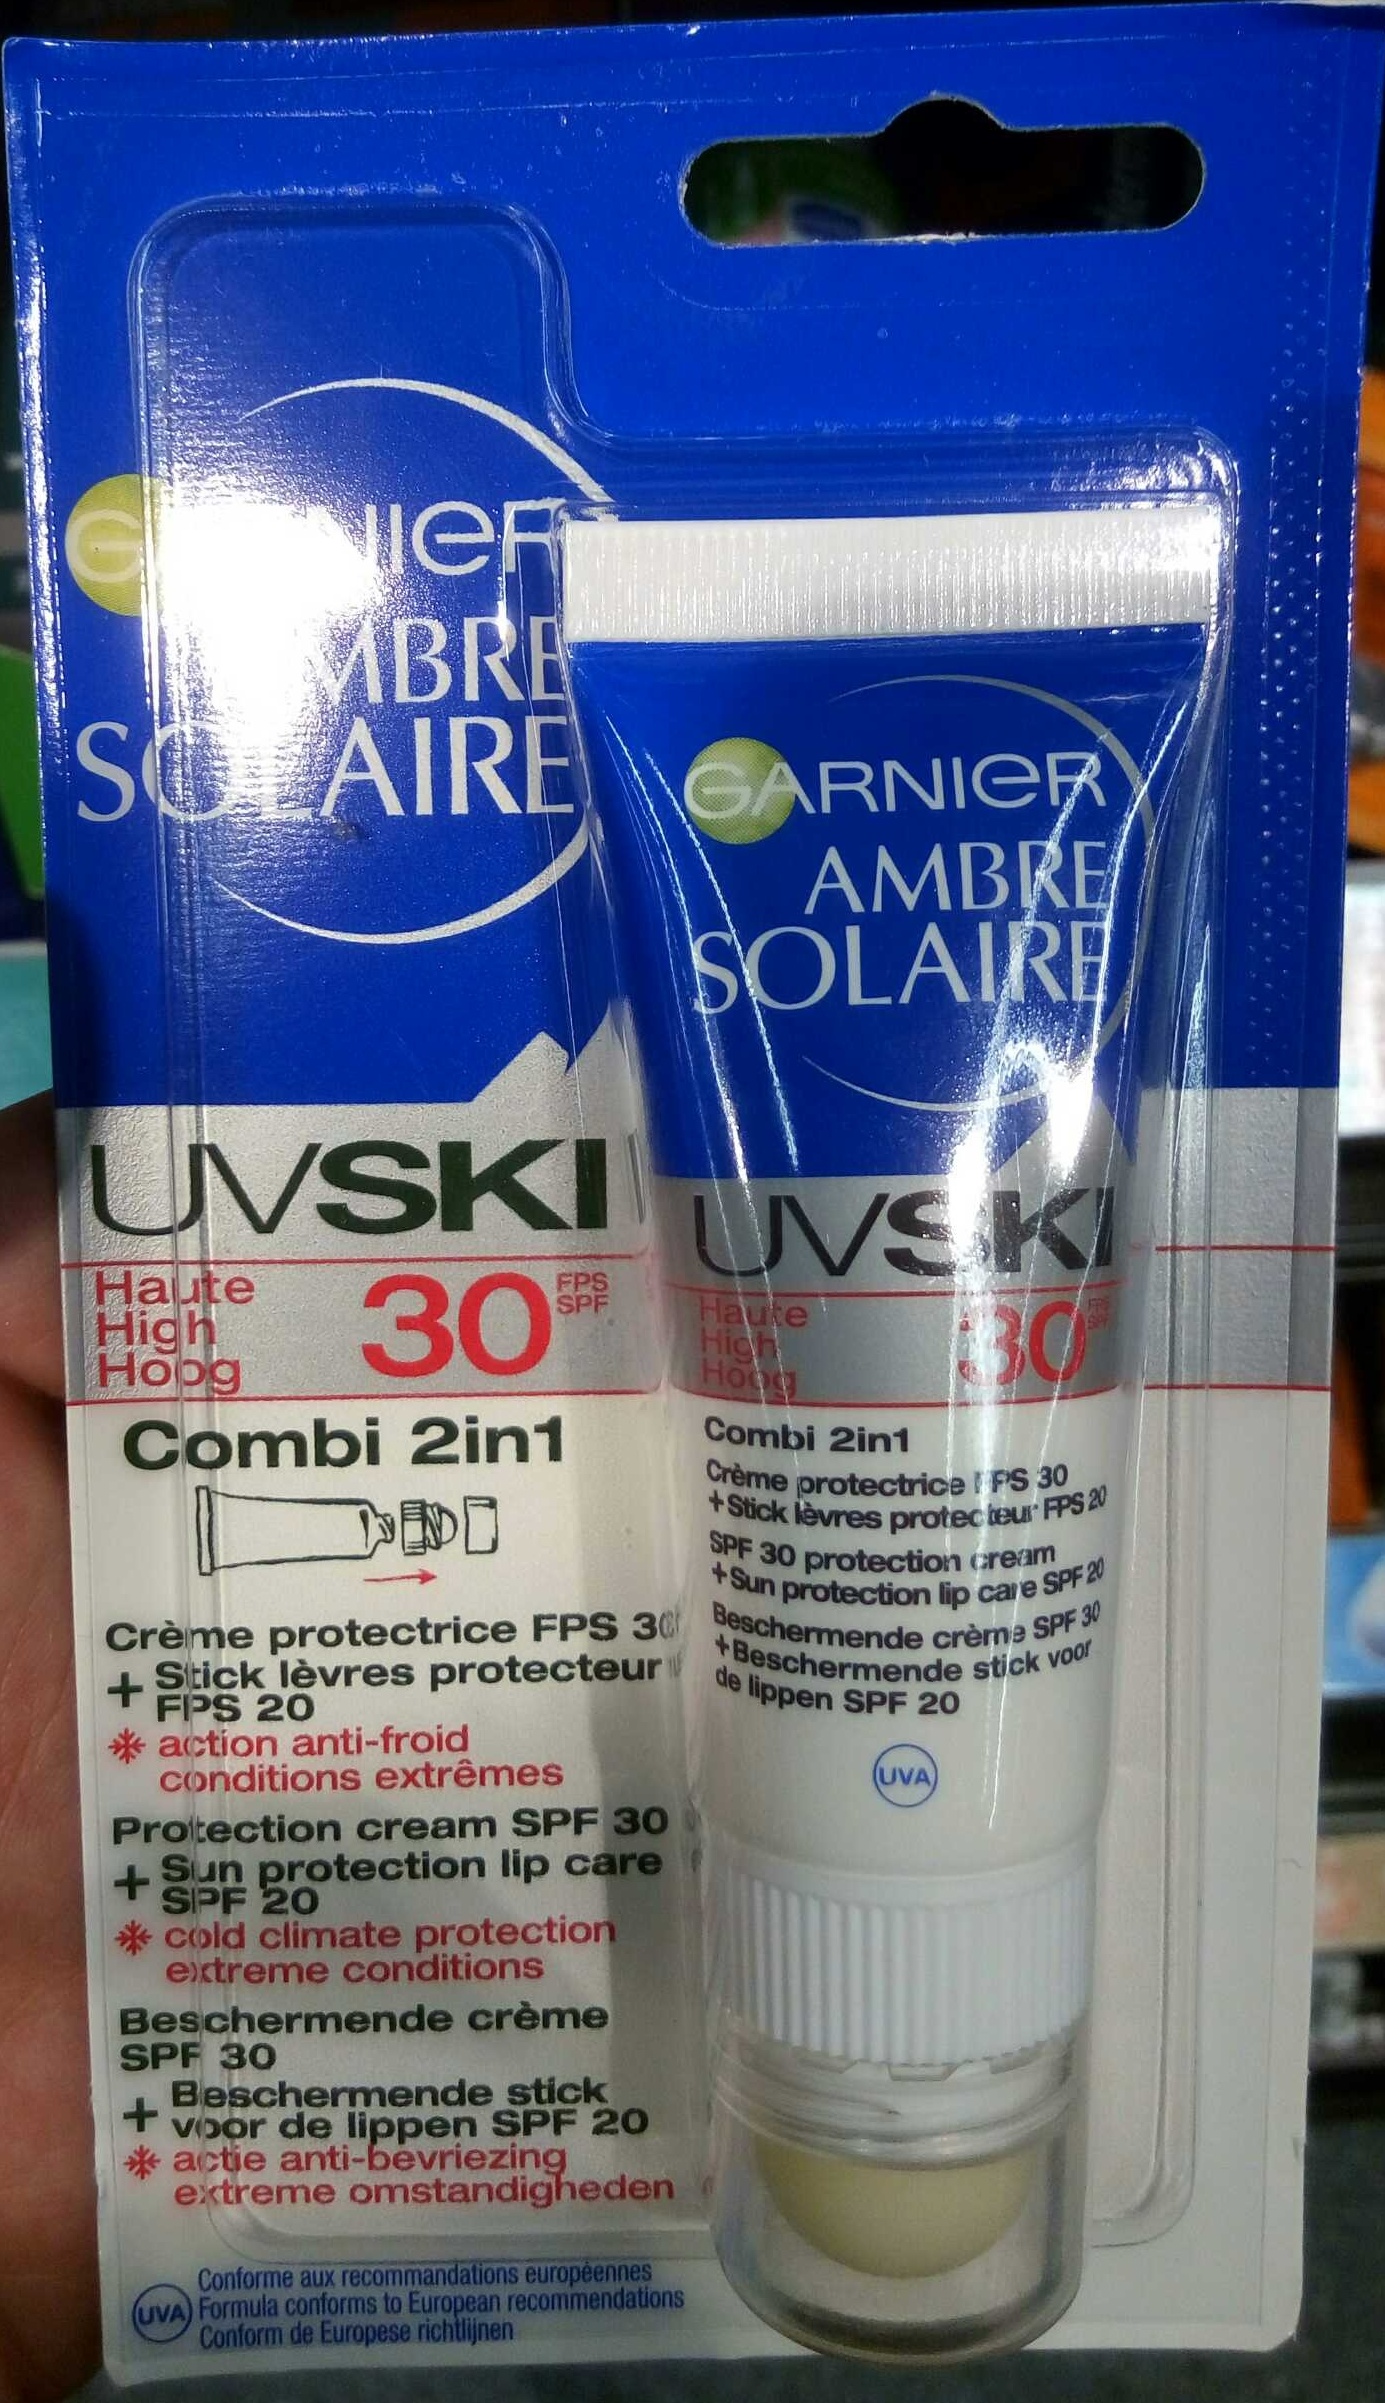 Ambre Solaire UV Ski 30 Combi 2in1 Crème protectrice + Stick lèvres protecteur - Produto - fr